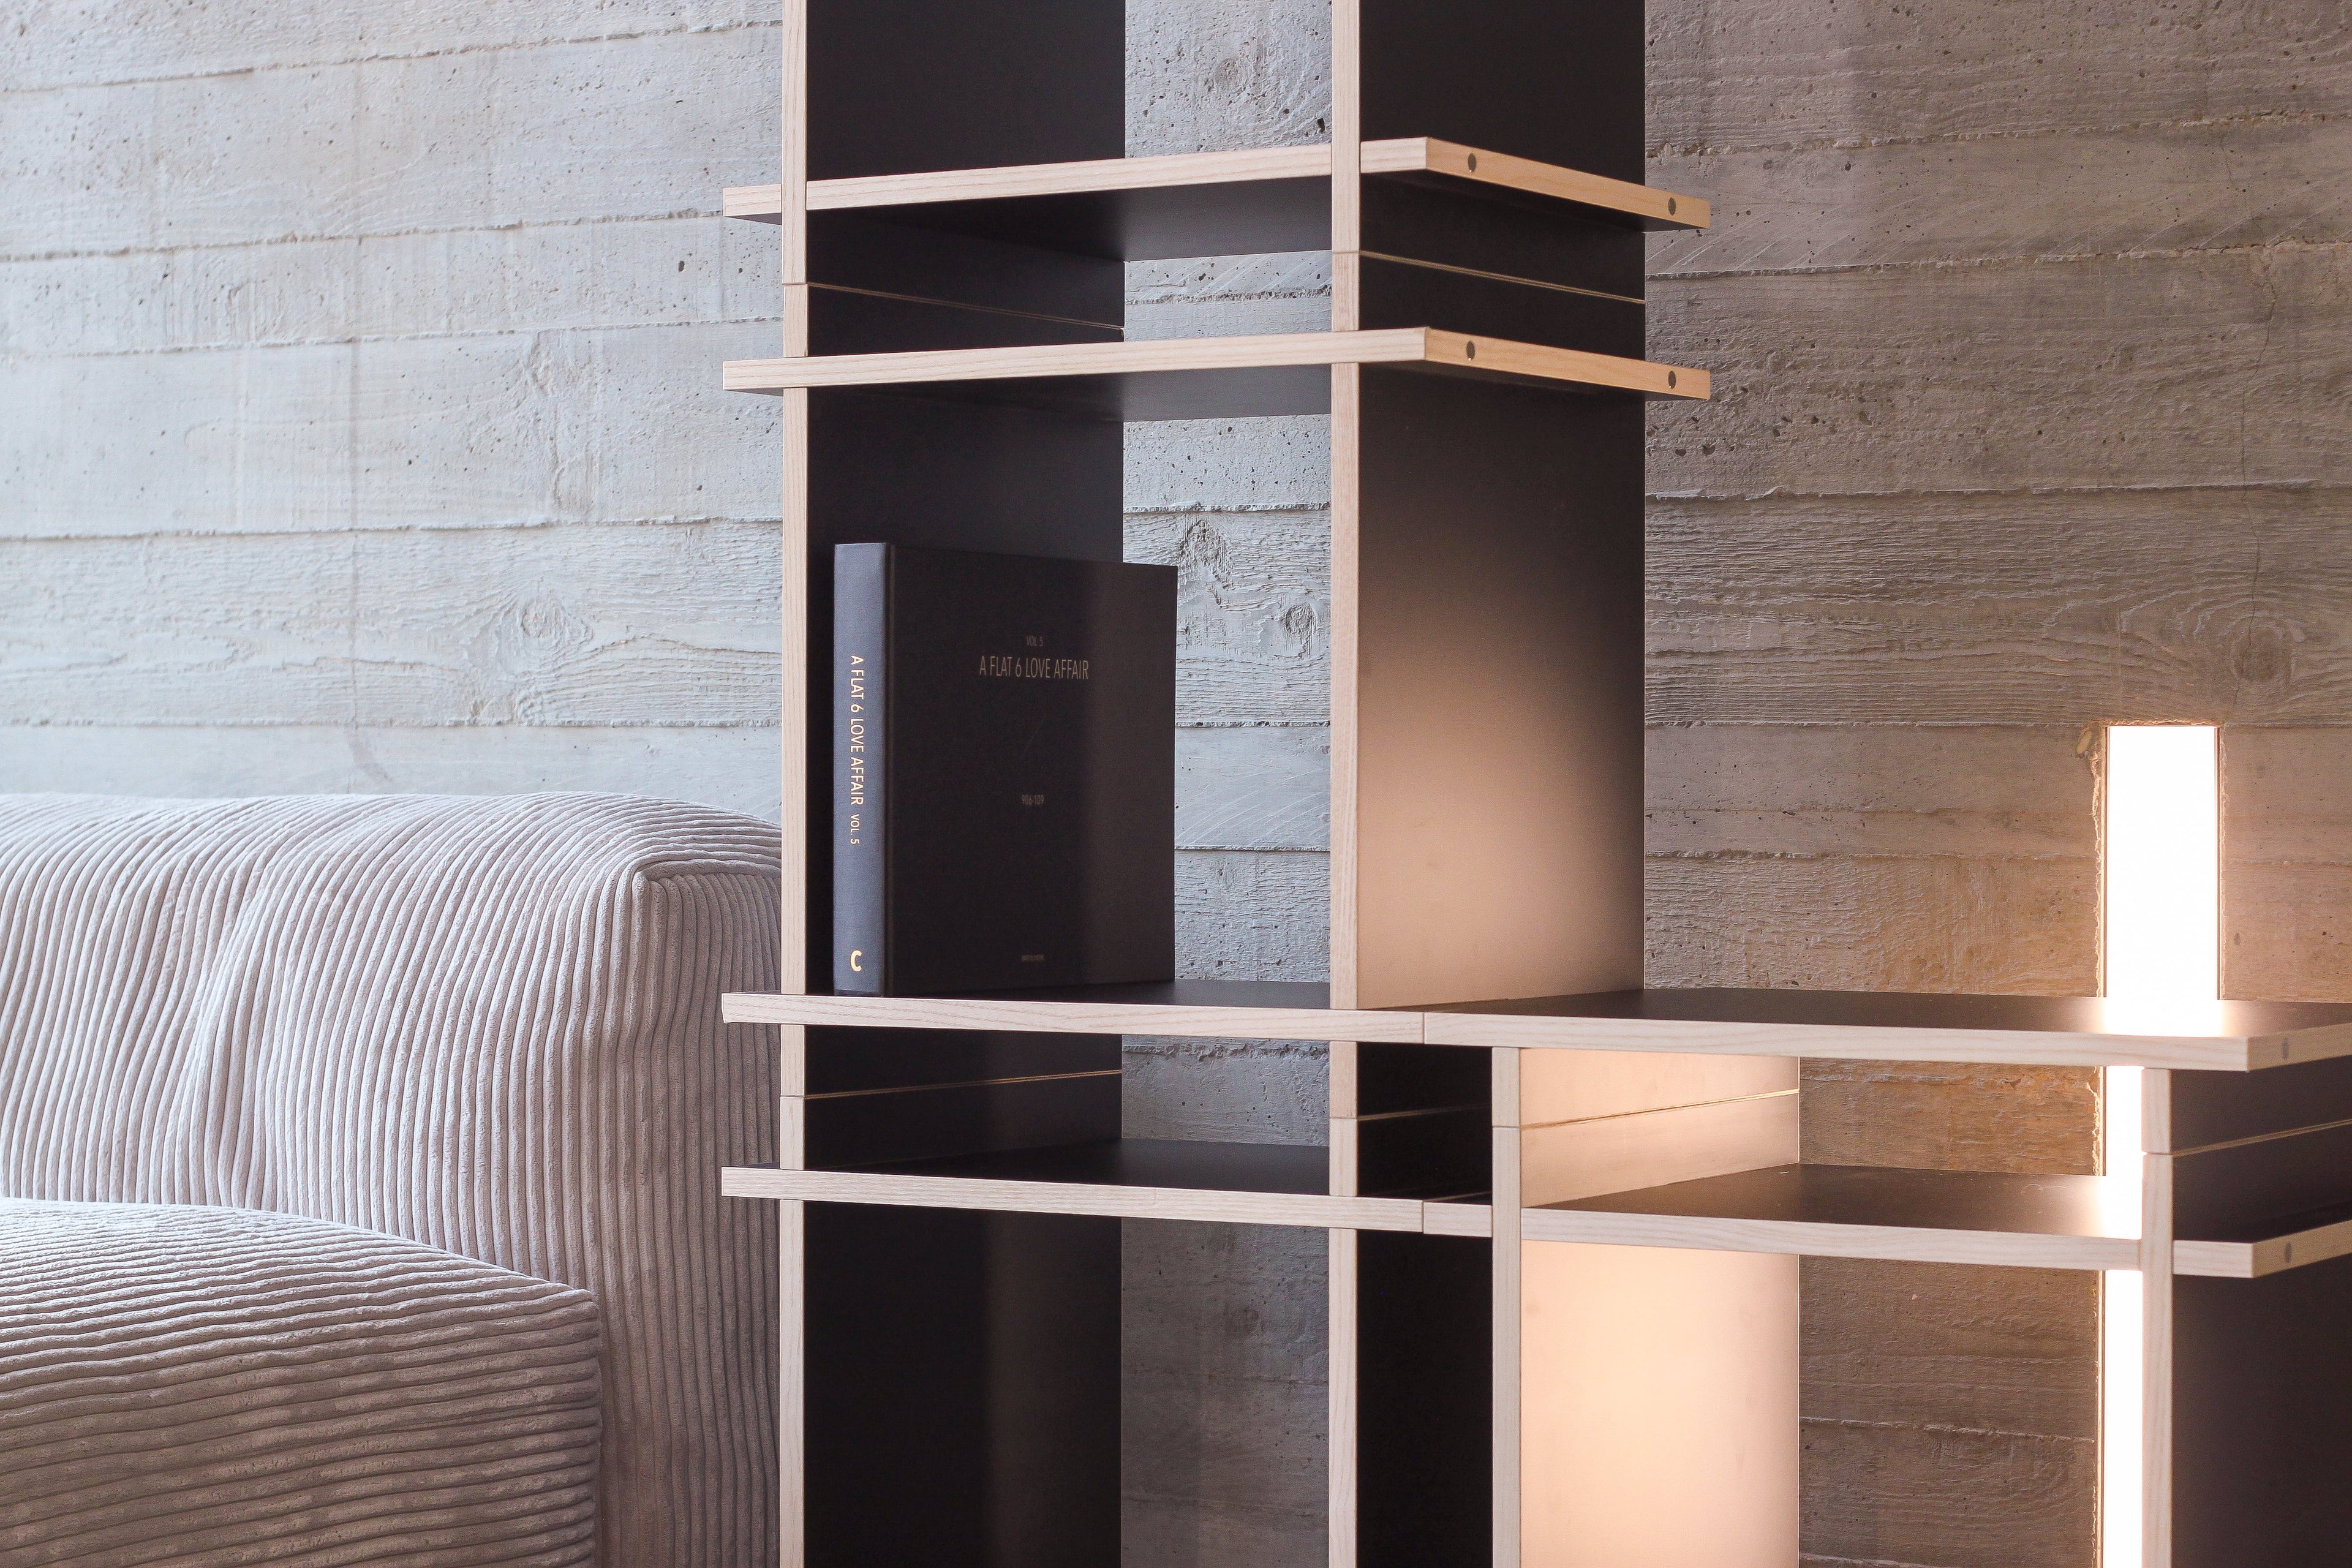 Regal in Farbe Schwarz aufgebaut als Sideboard in modernem Wohnzimmer.